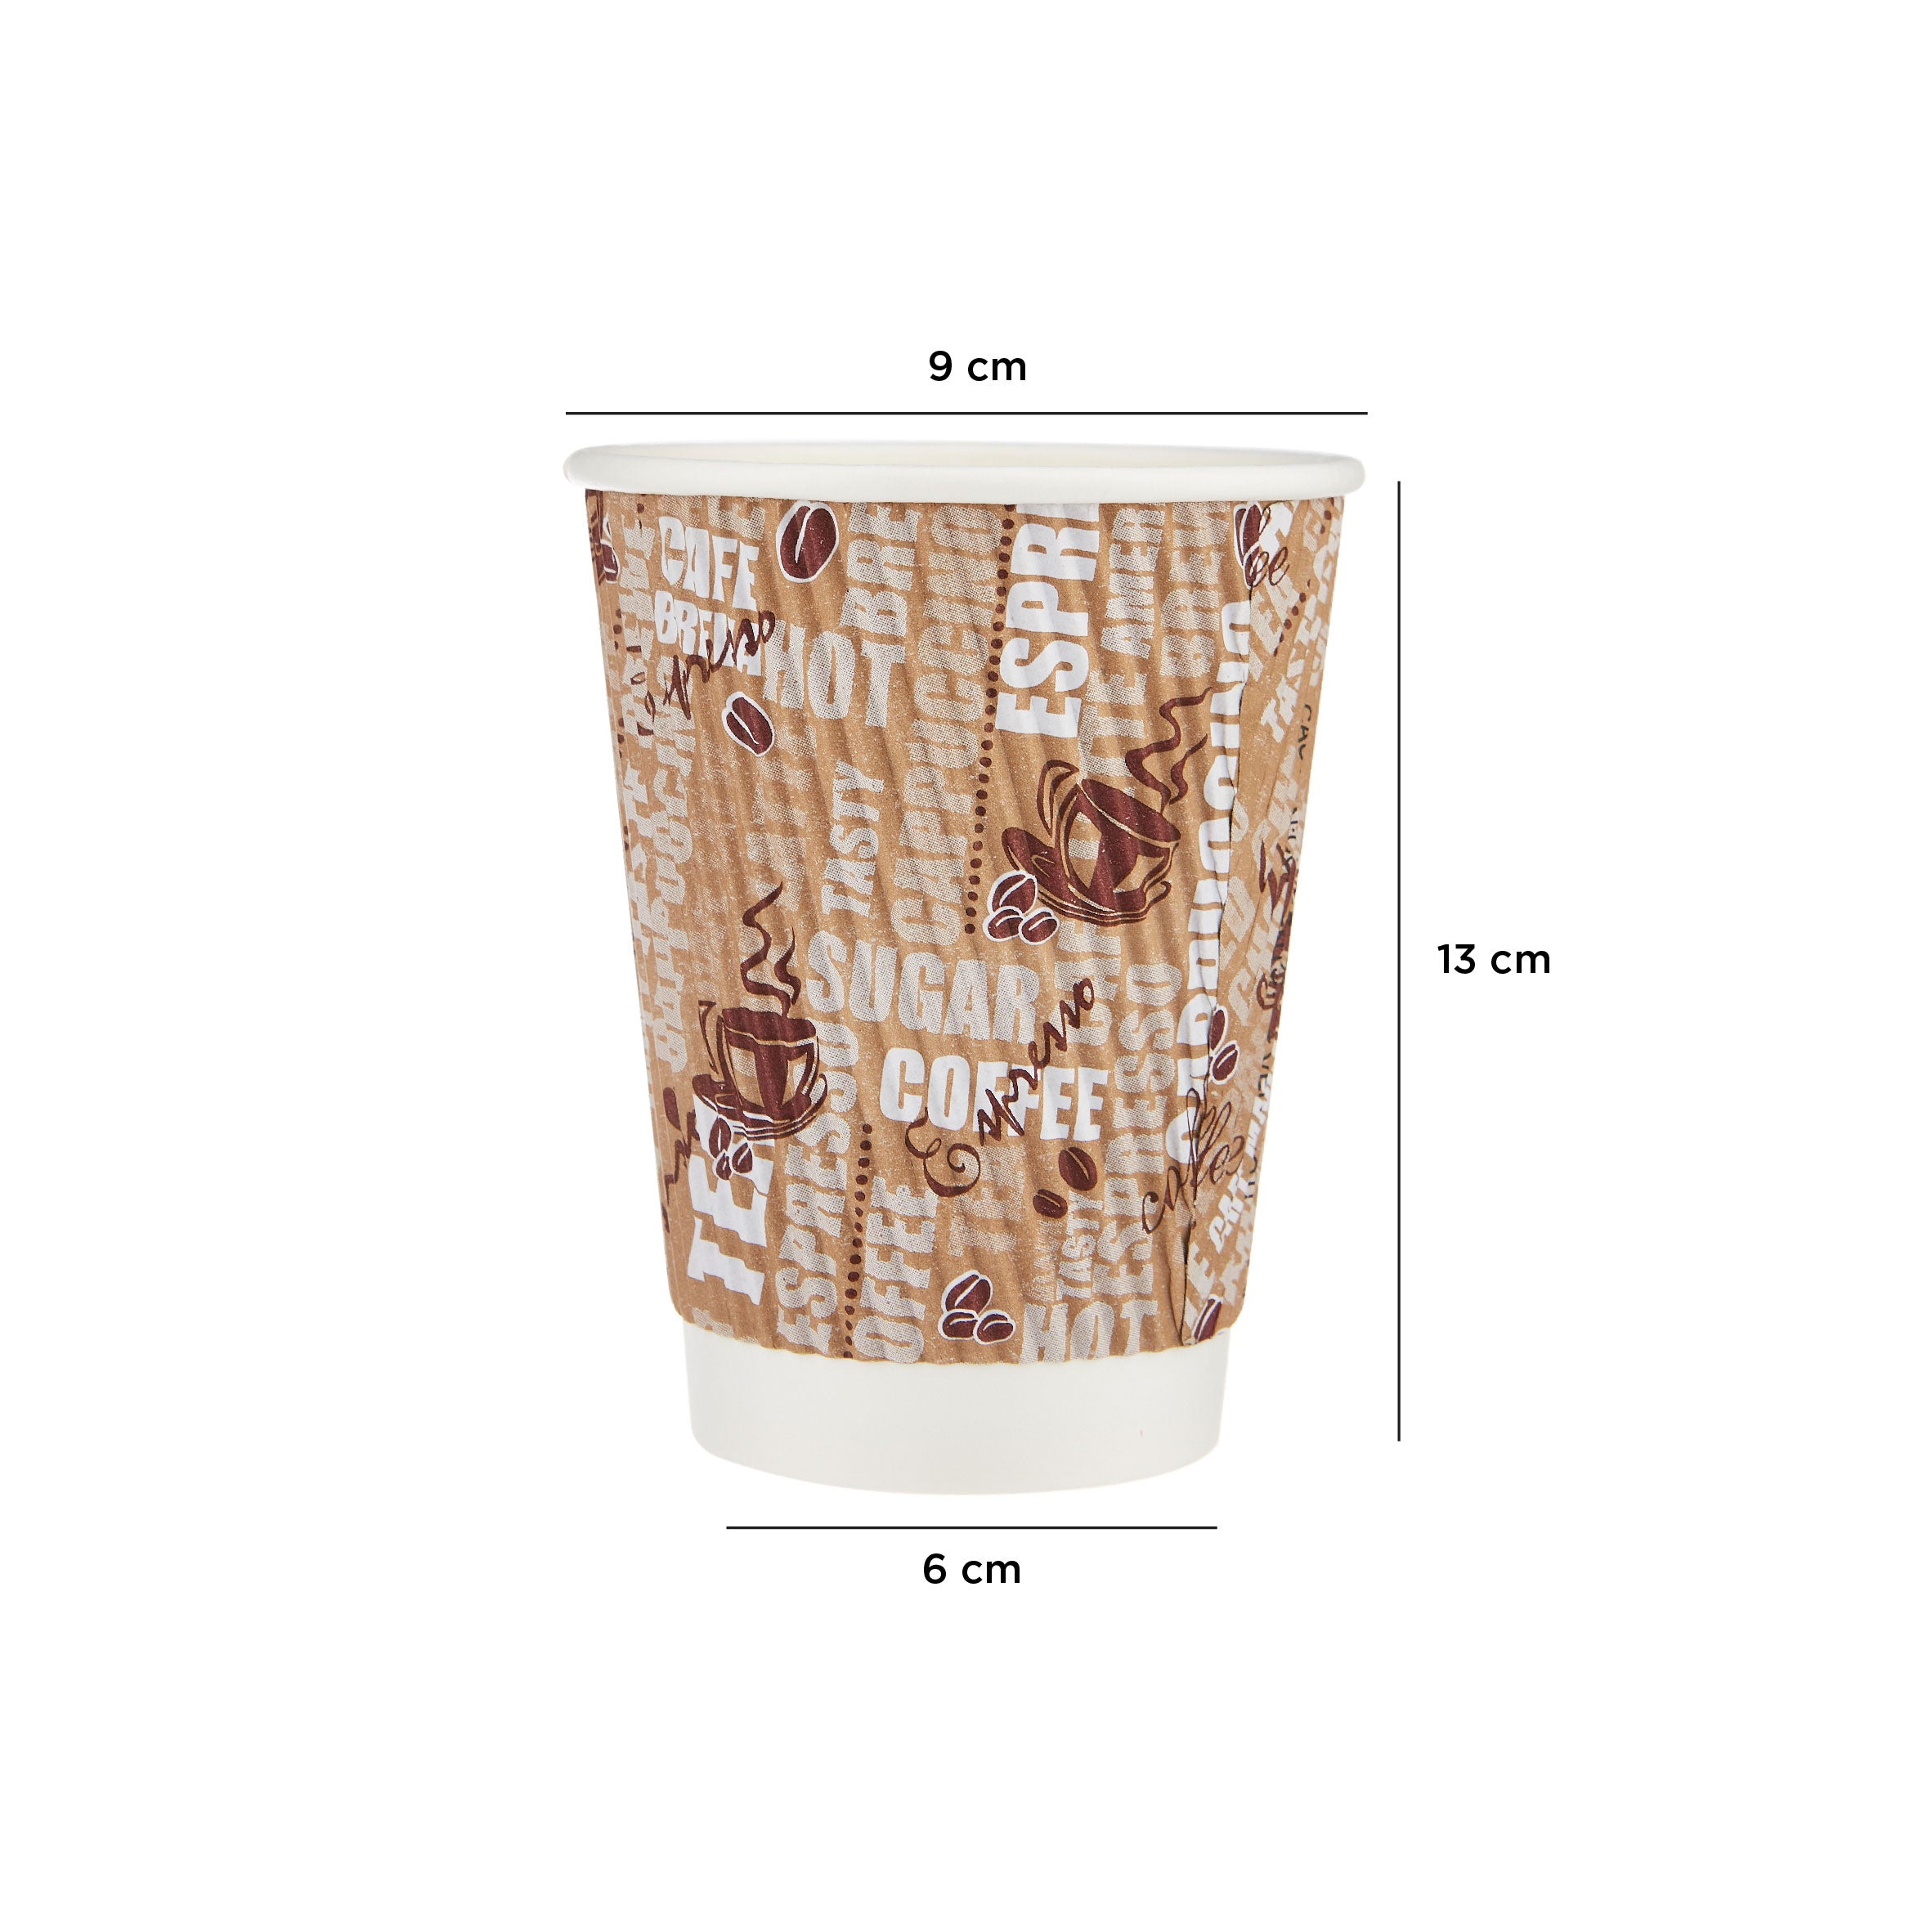 Printed Ripple Paper Cups - Hotpack UAE